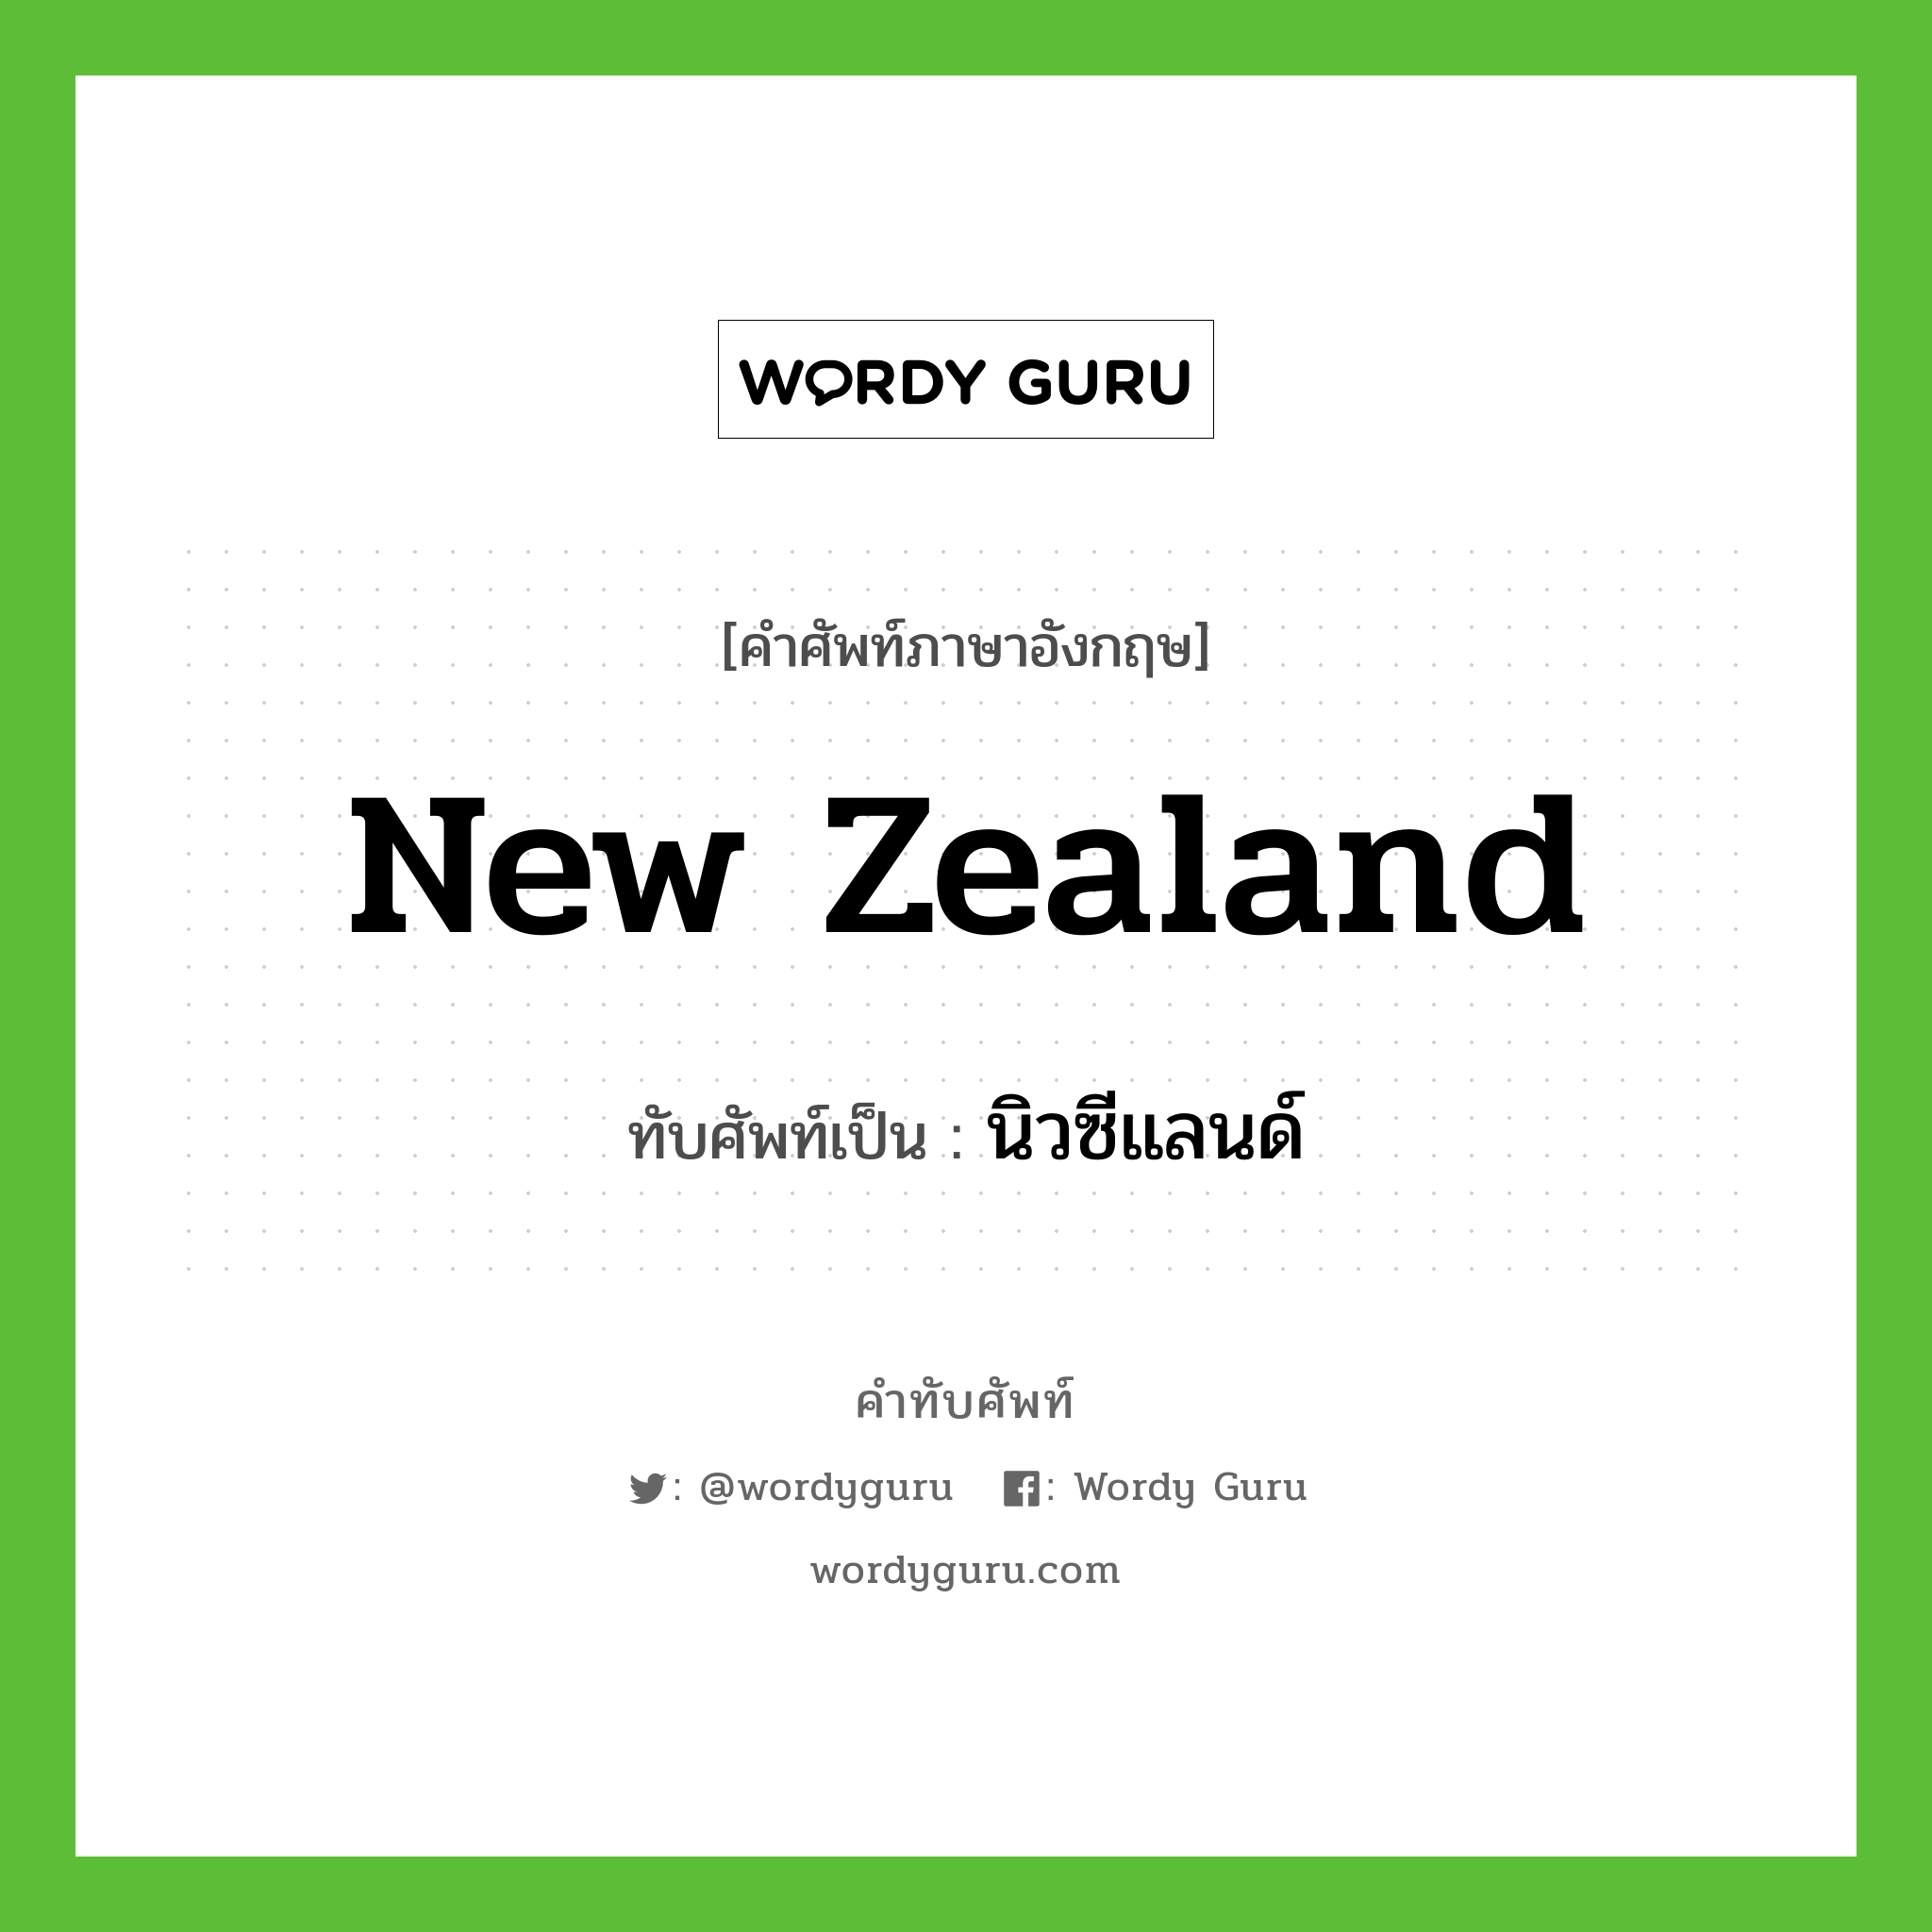 นิวซีแลนด์ เขียนอย่างไร?, คำศัพท์ภาษาอังกฤษ นิวซีแลนด์ ทับศัพท์เป็น New Zealand